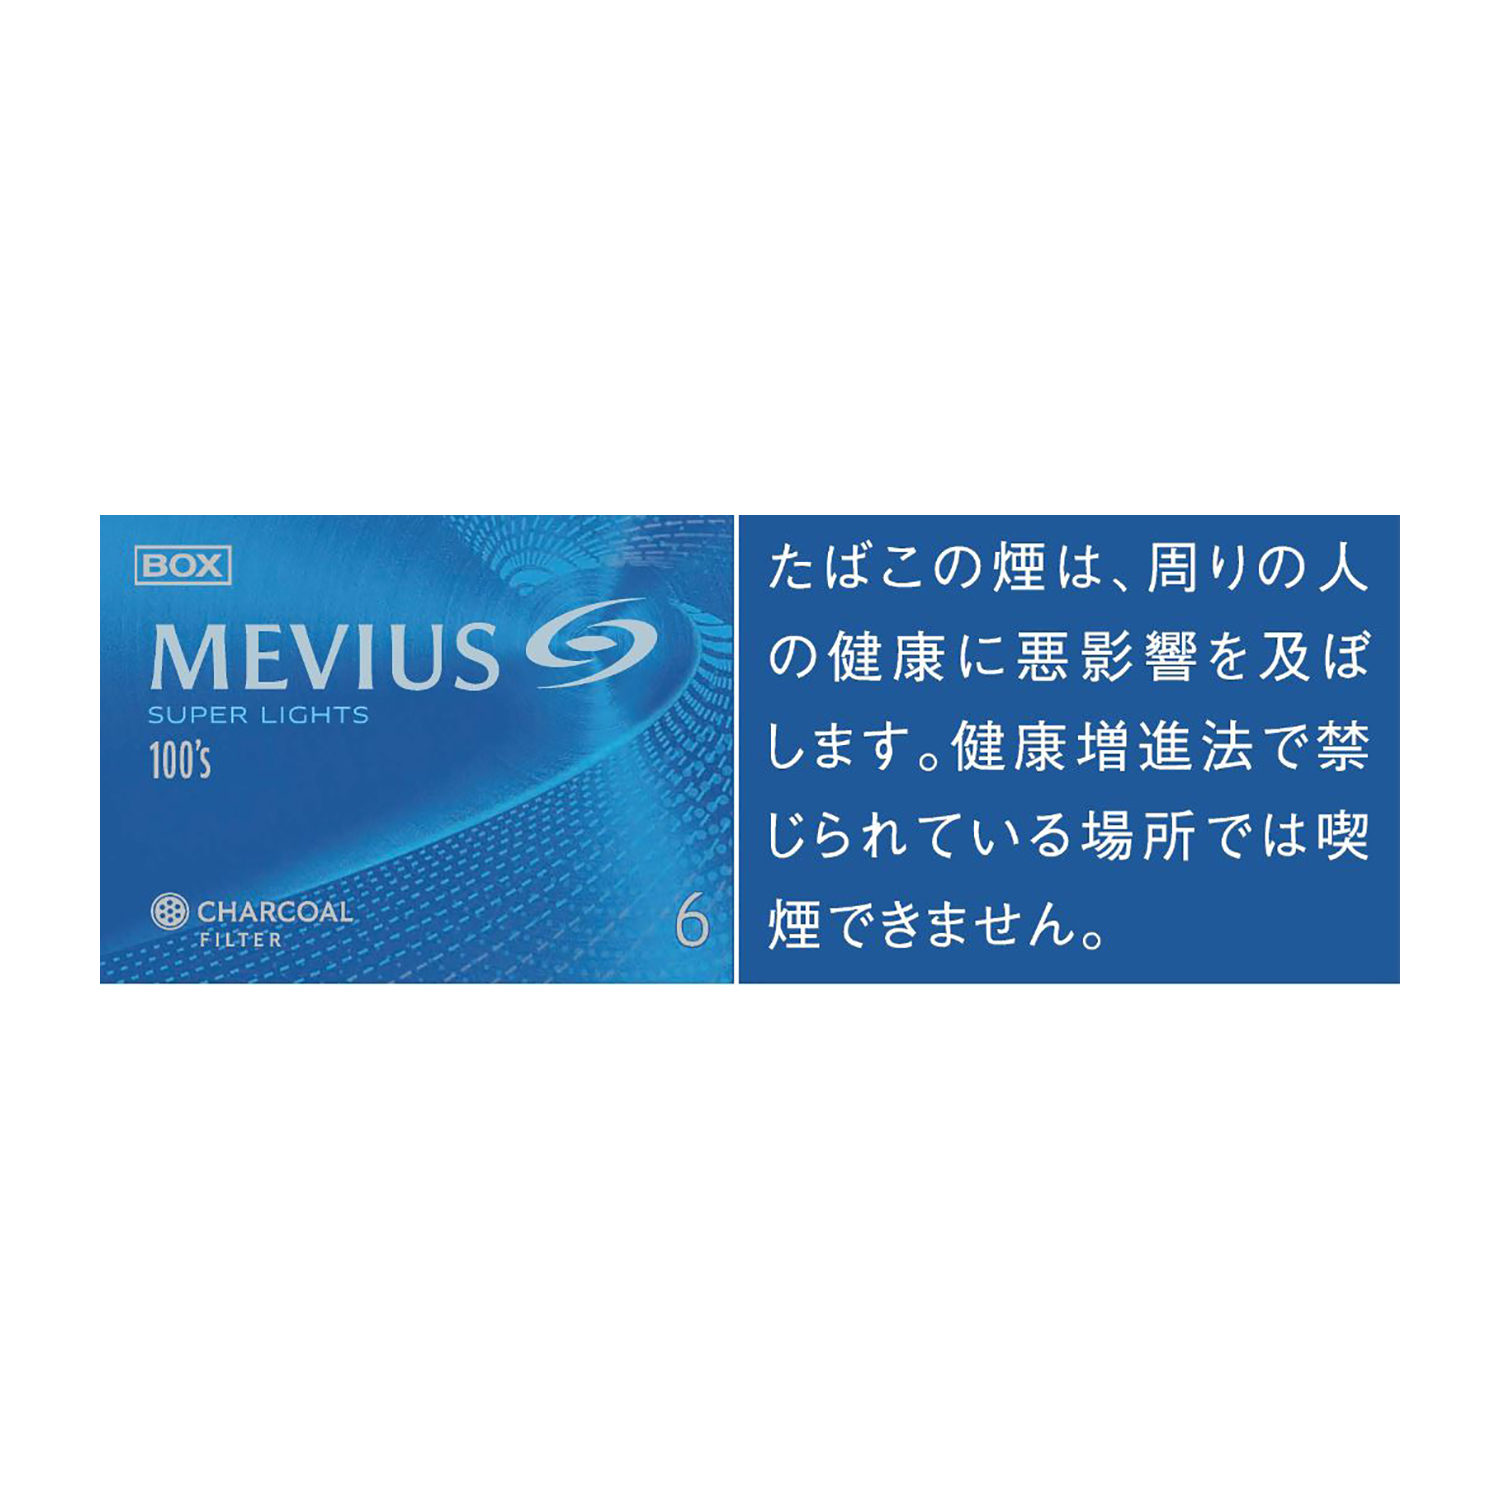 MEVIUS SUPER LIGHTS 100's BOX / Tar:6mg Nicotine:0.5mg